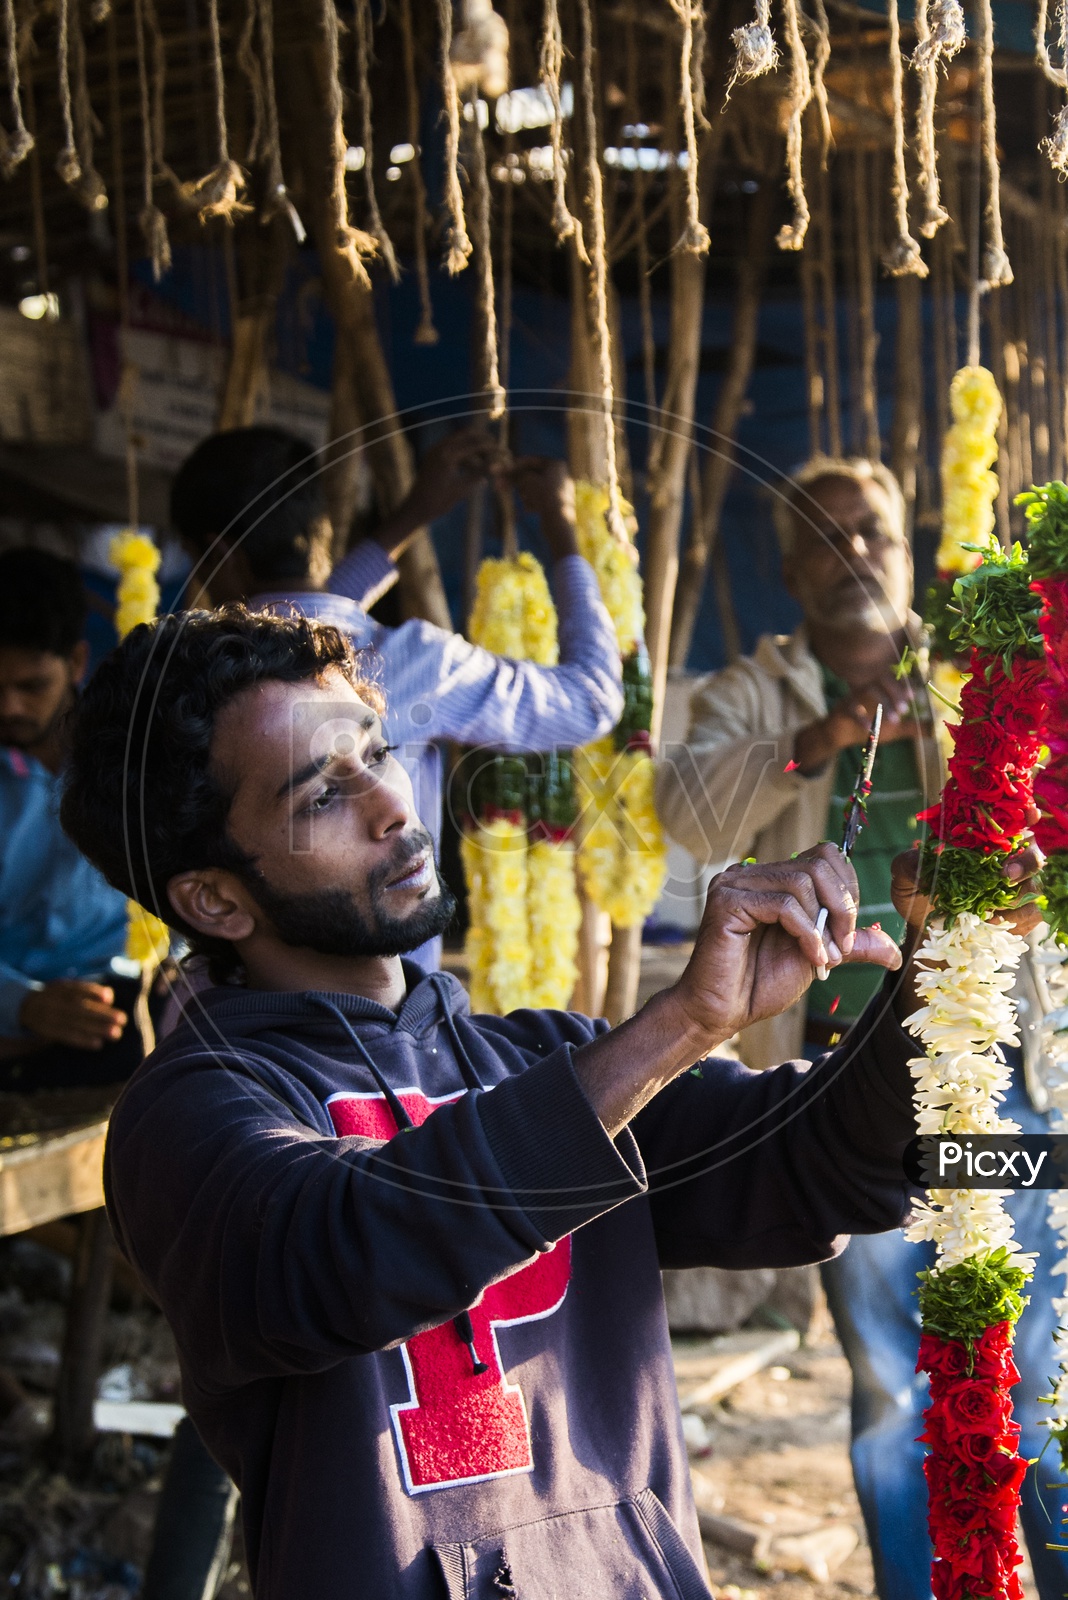 Flower Vendor at Gudimalkapur Flower Market